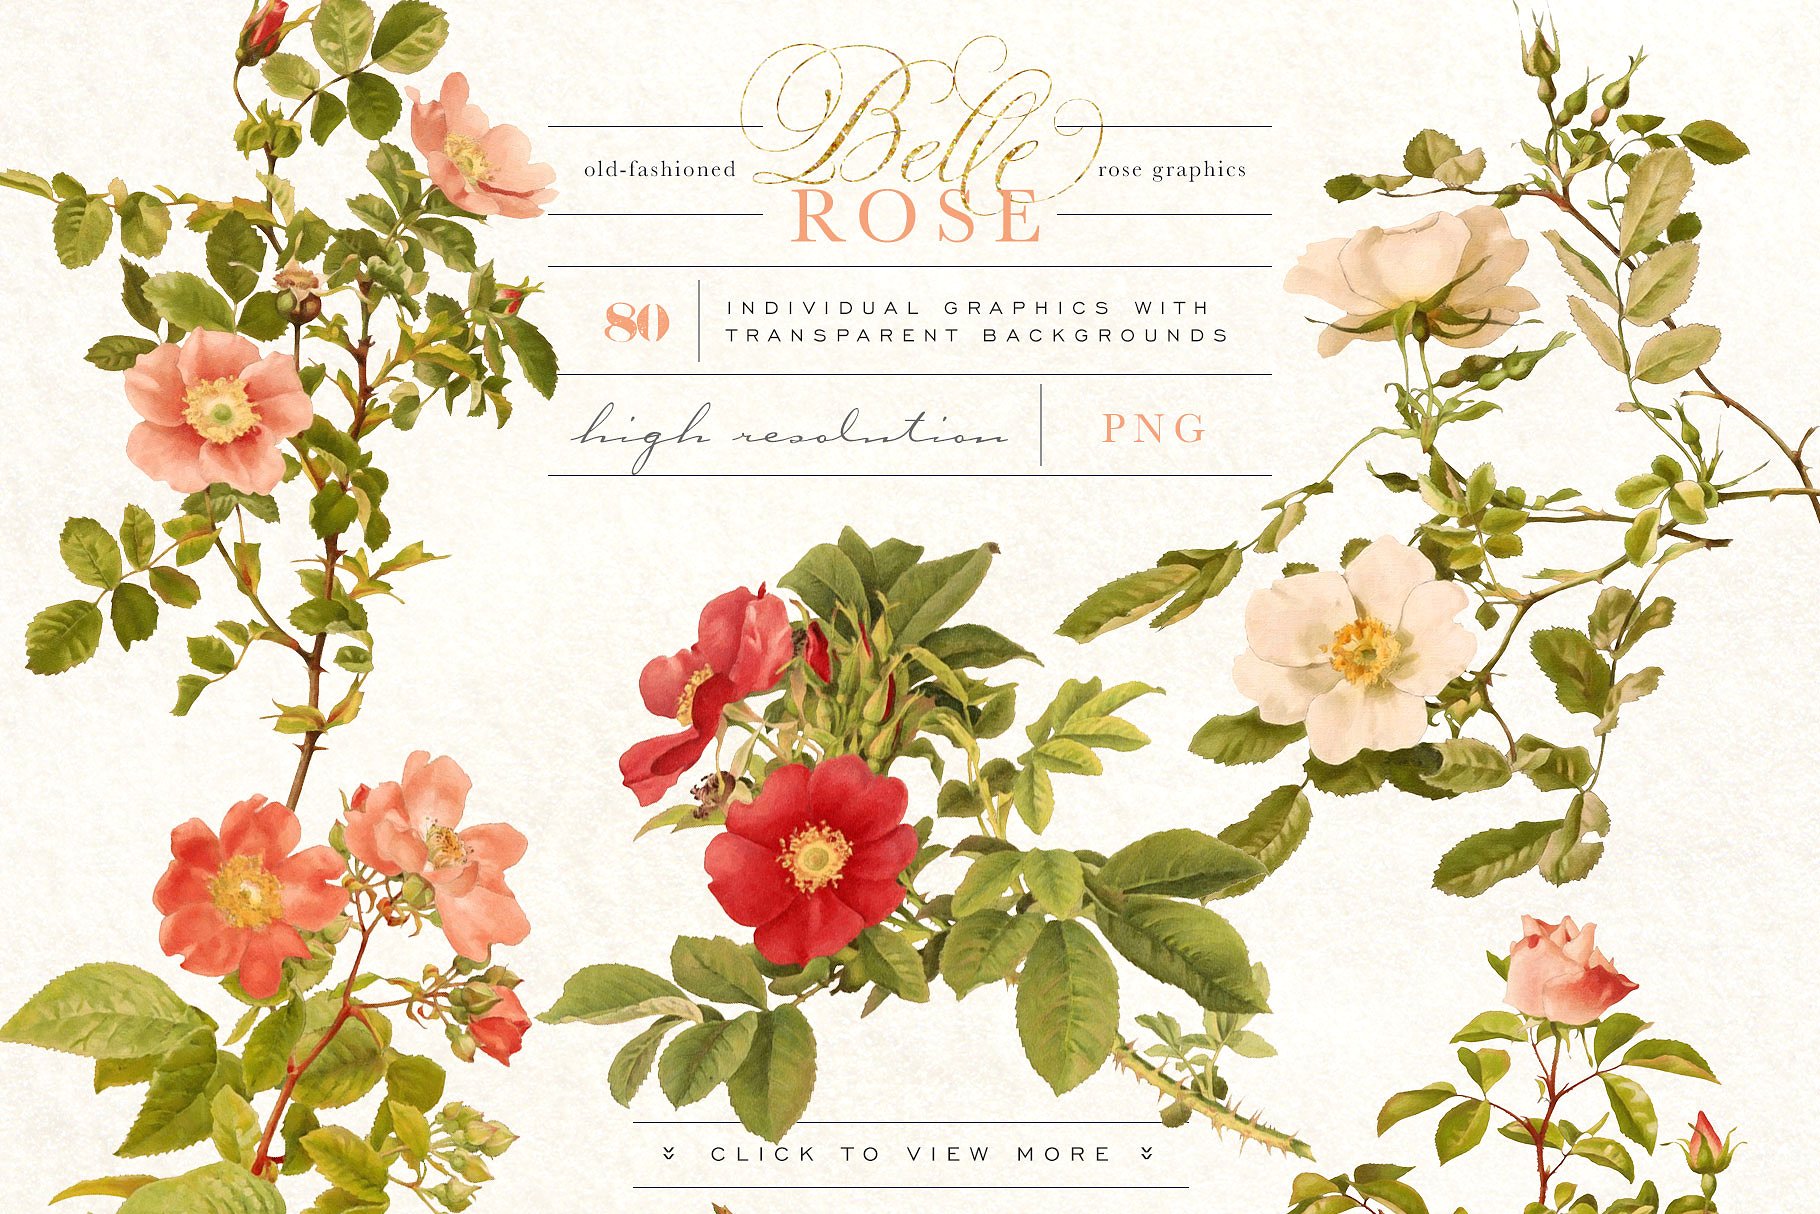 旧时尚老派水彩玫瑰花卉剪贴画合集 Belle Rose Antique Graphics Bundle插图(4)